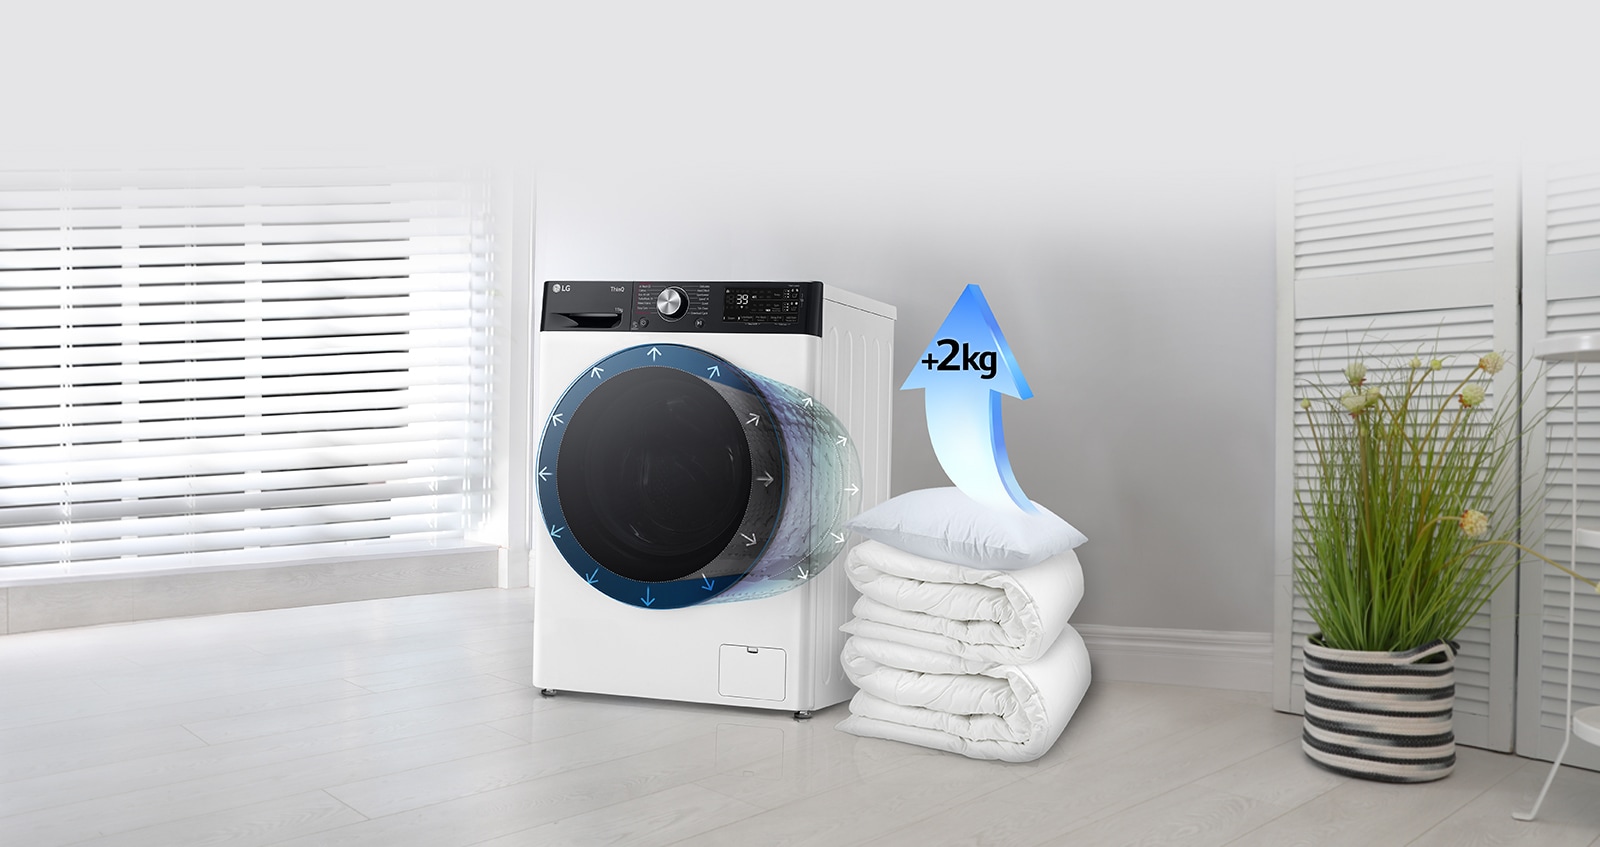 Dekens en kussens liggen naast de wasmachine, en op het kussen staat een pijl die het gewicht van het kussen met 2 kg verhoogt.